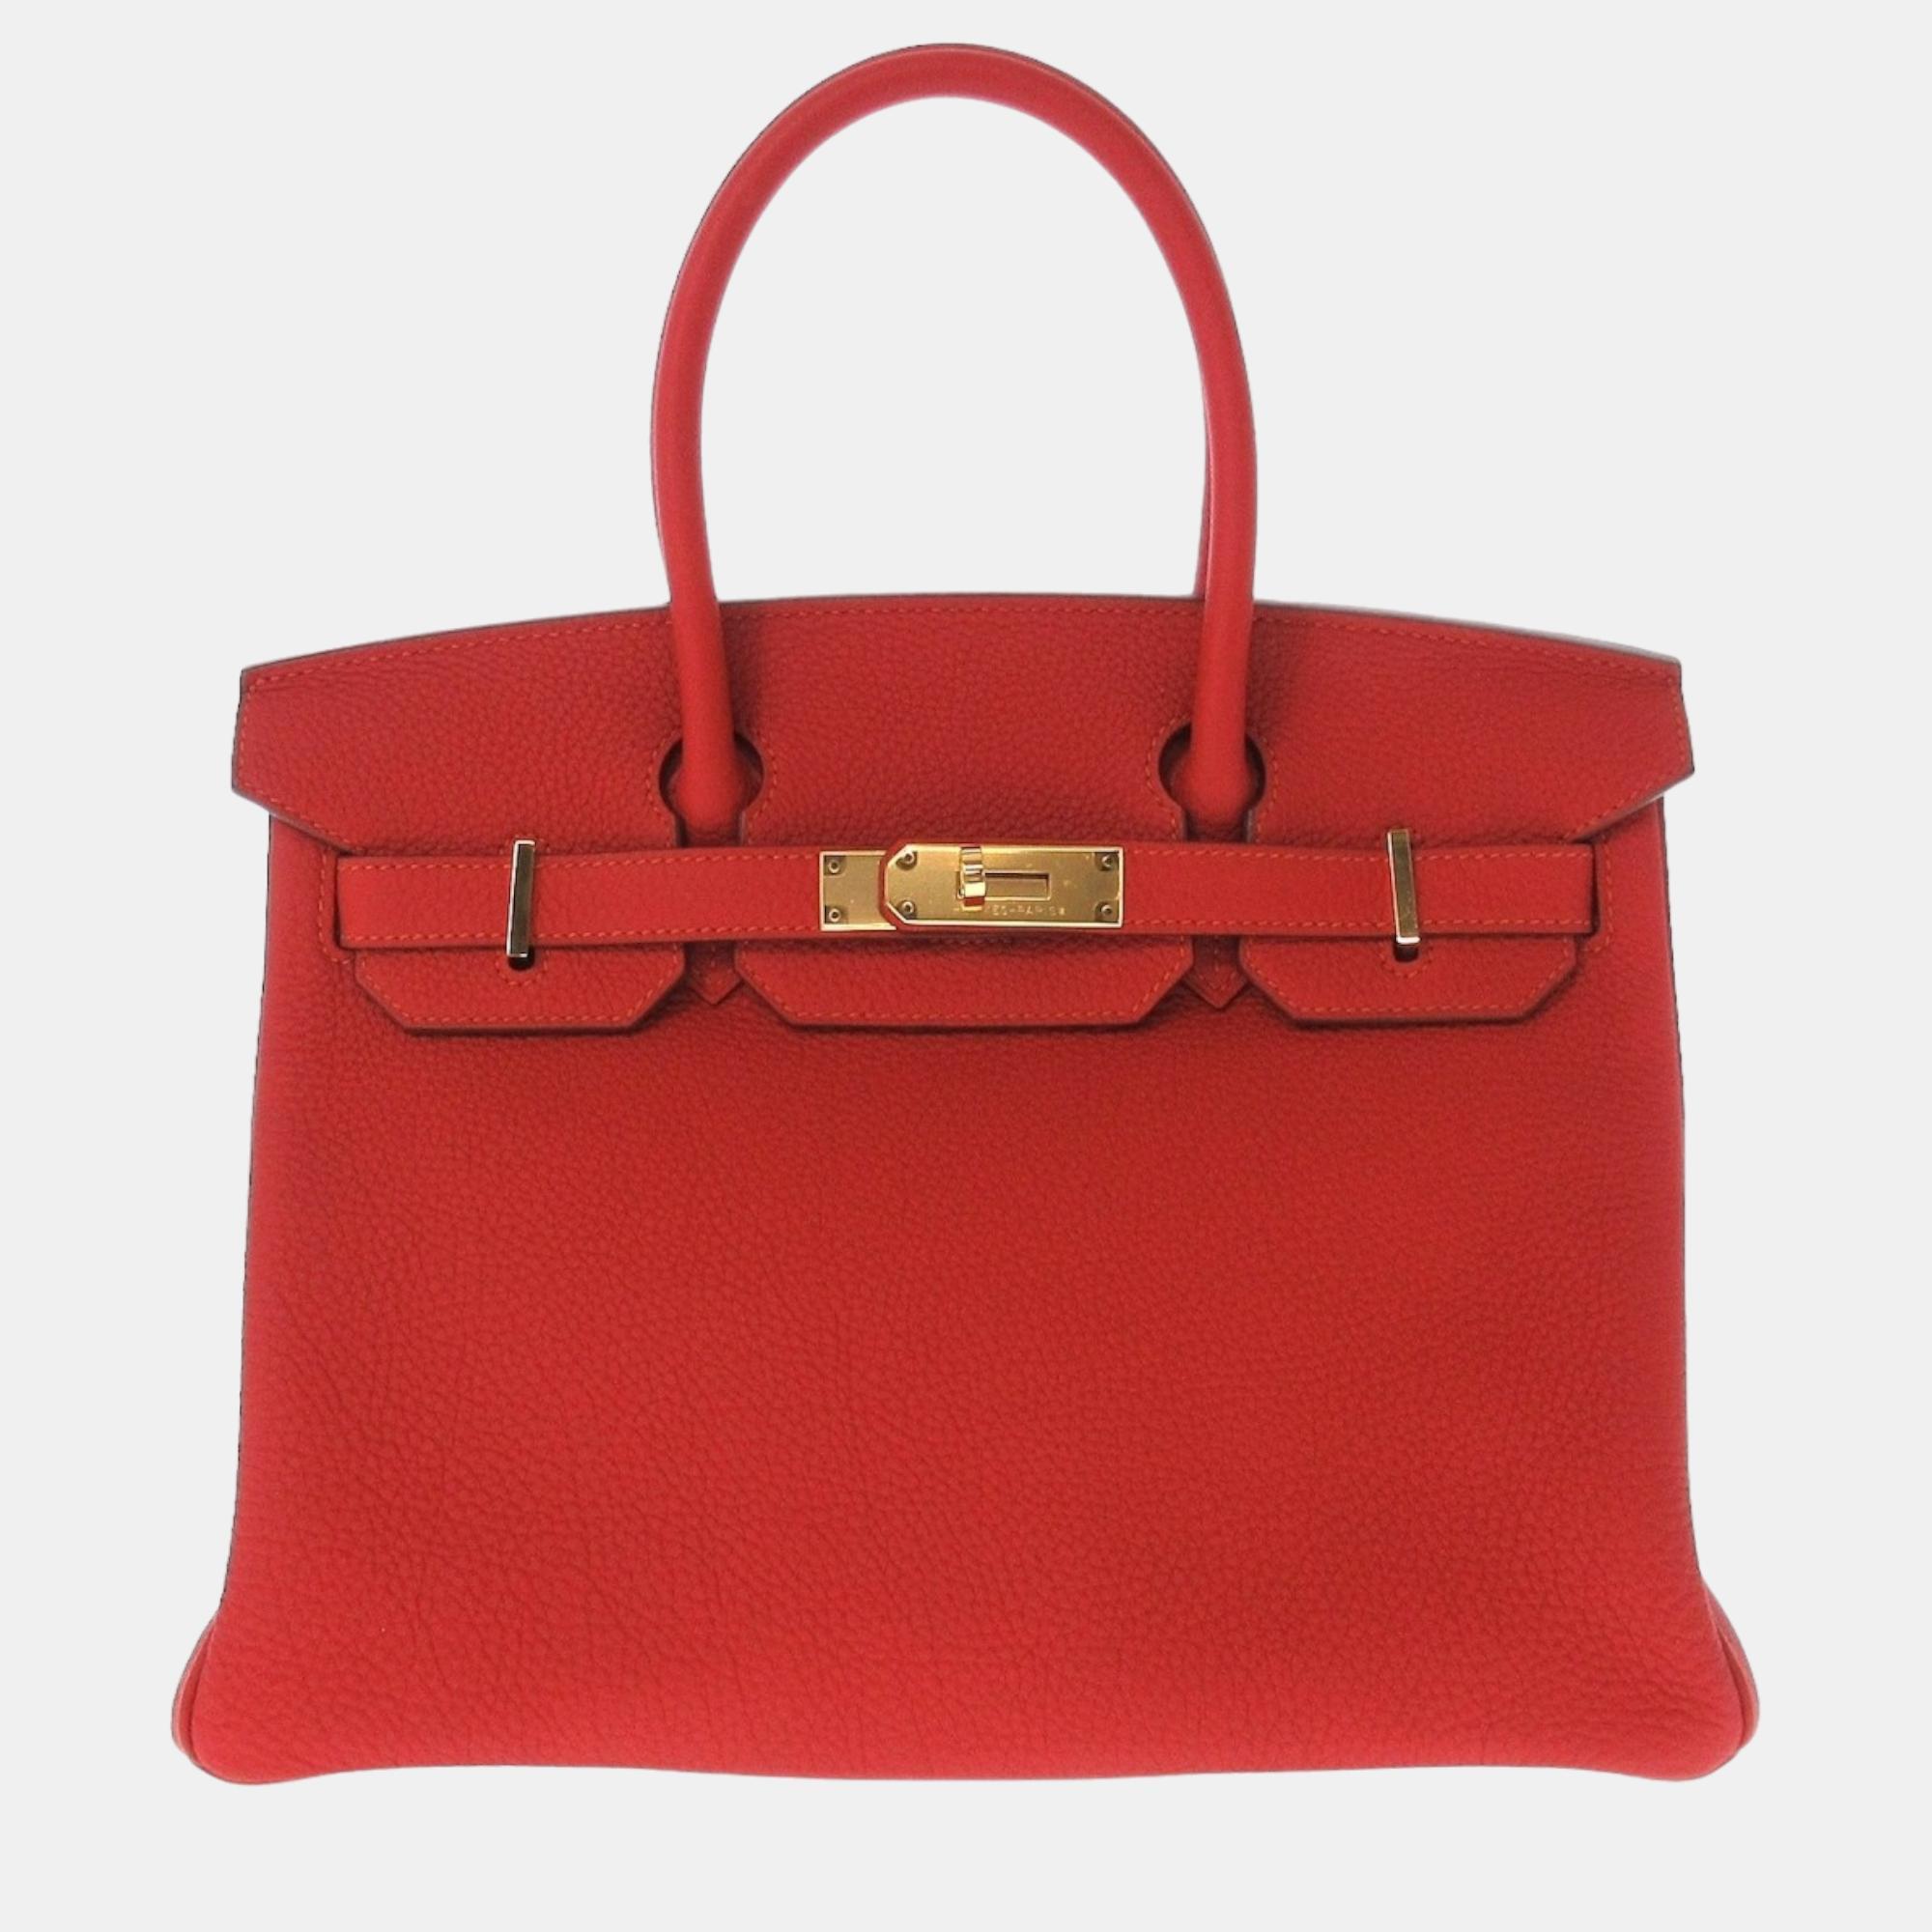 Hermes Red Togo Leather Gold Hardware Birkin 30 Bag